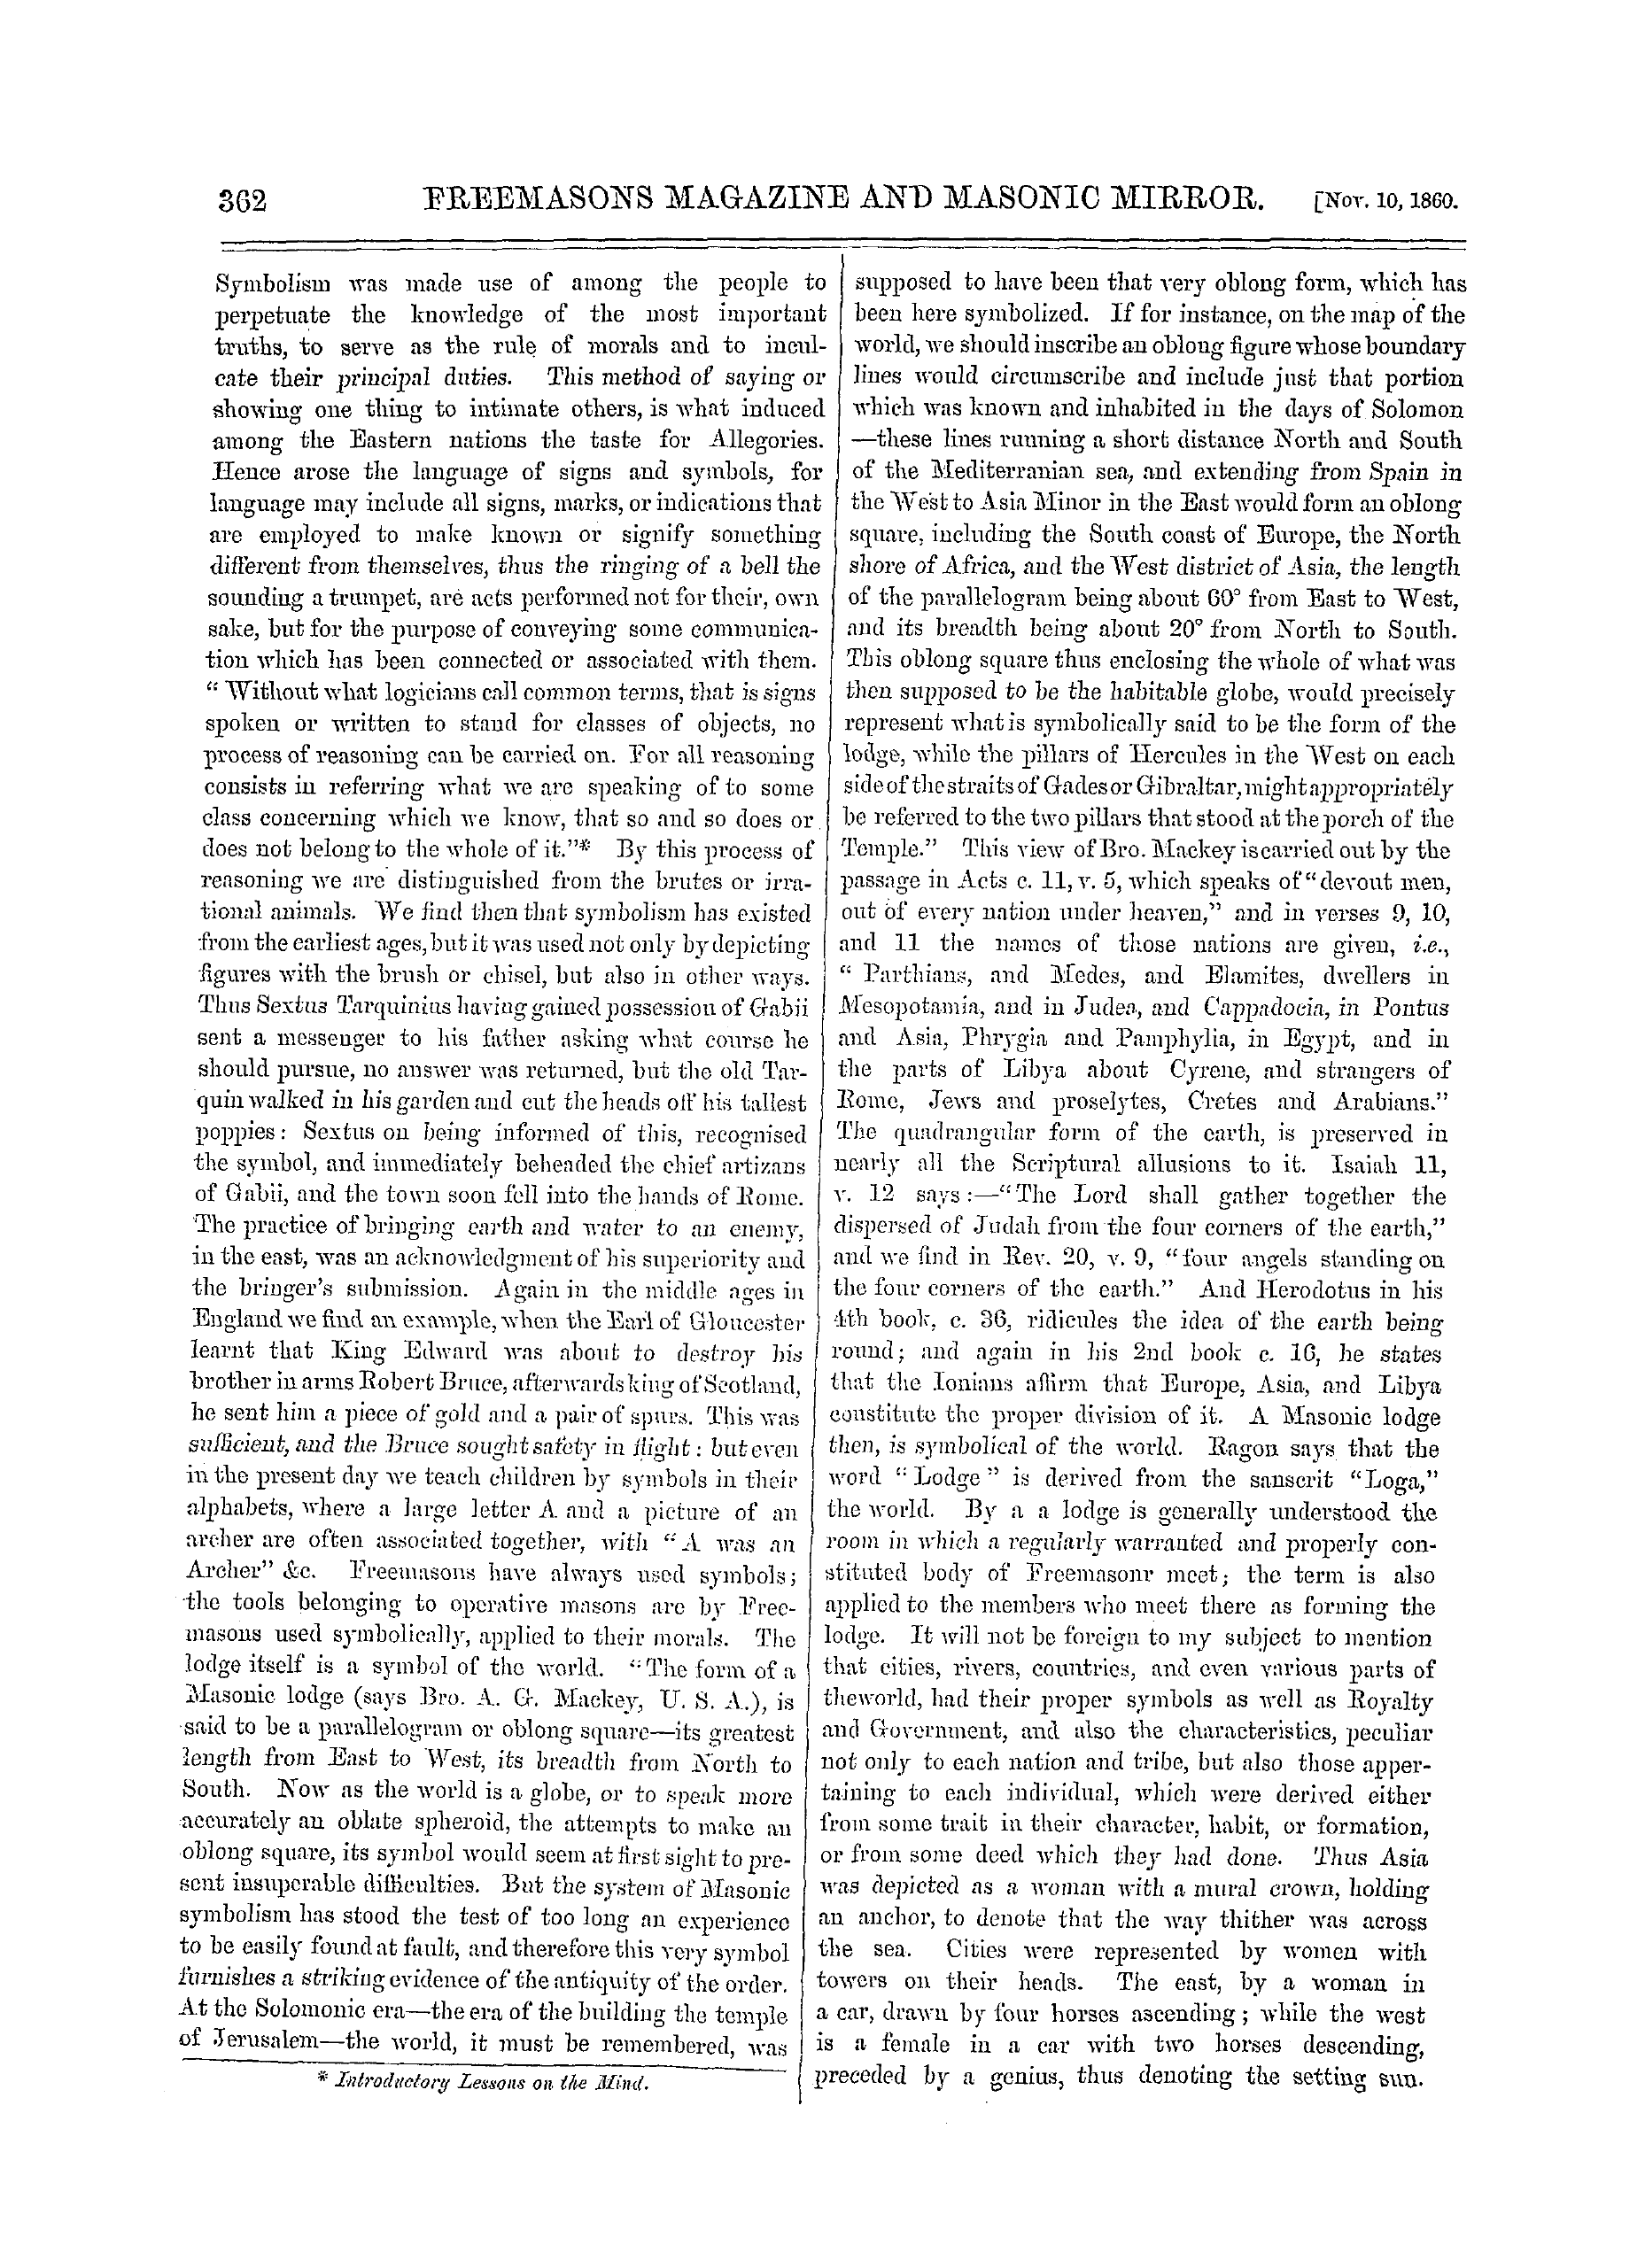 The Freemasons' Monthly Magazine: 1860-11-10: 2